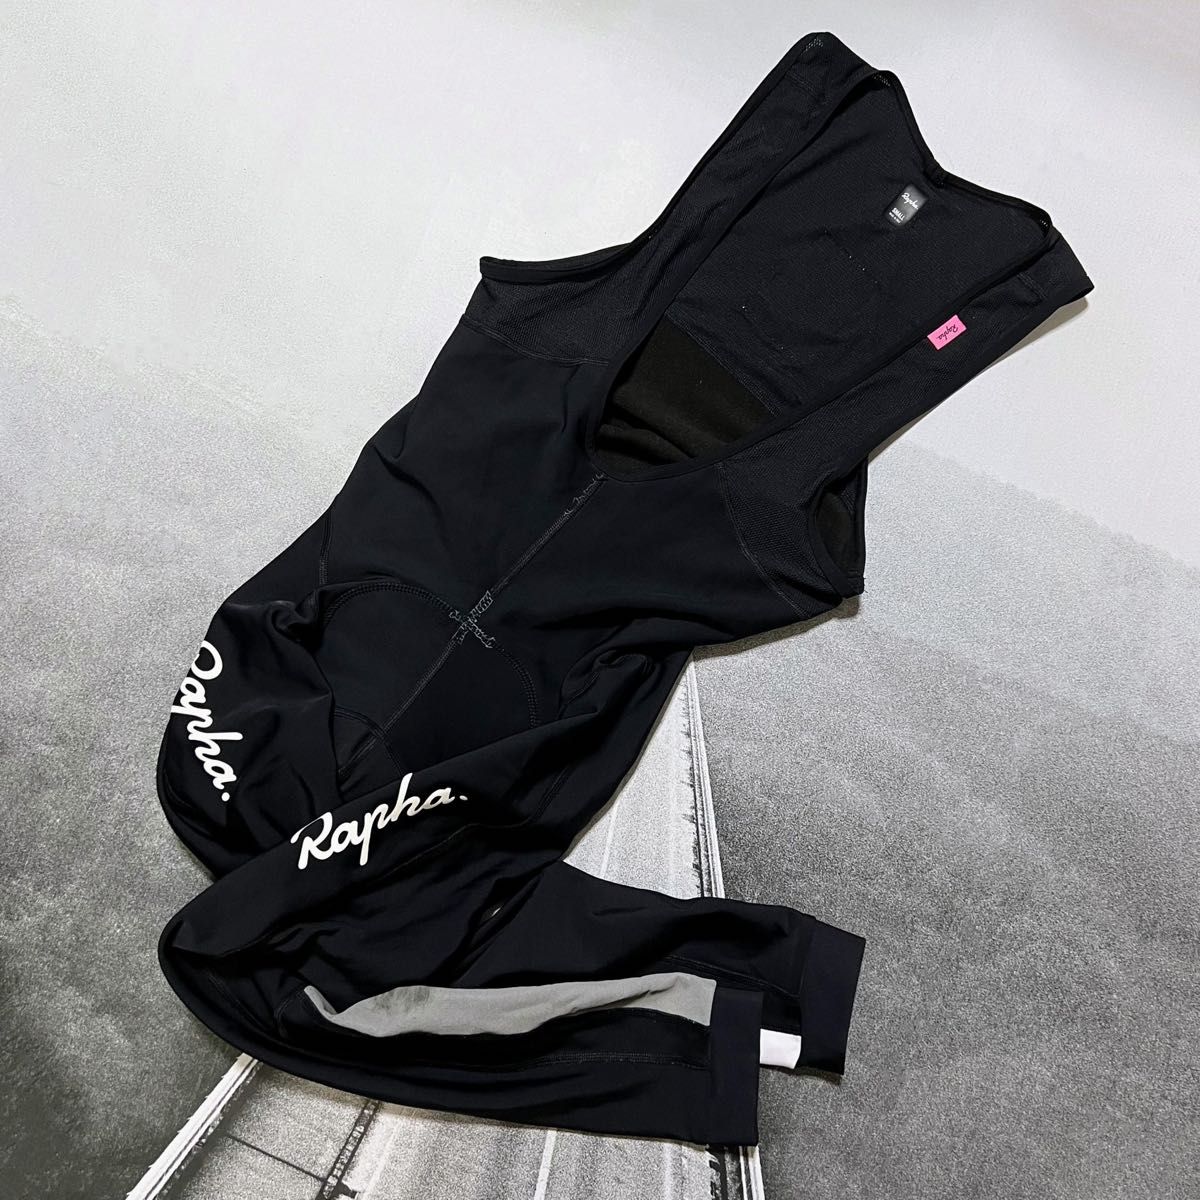 Rapha メンズ クラシック ウィンター タイツ パッド付 Sサイズ ブラック